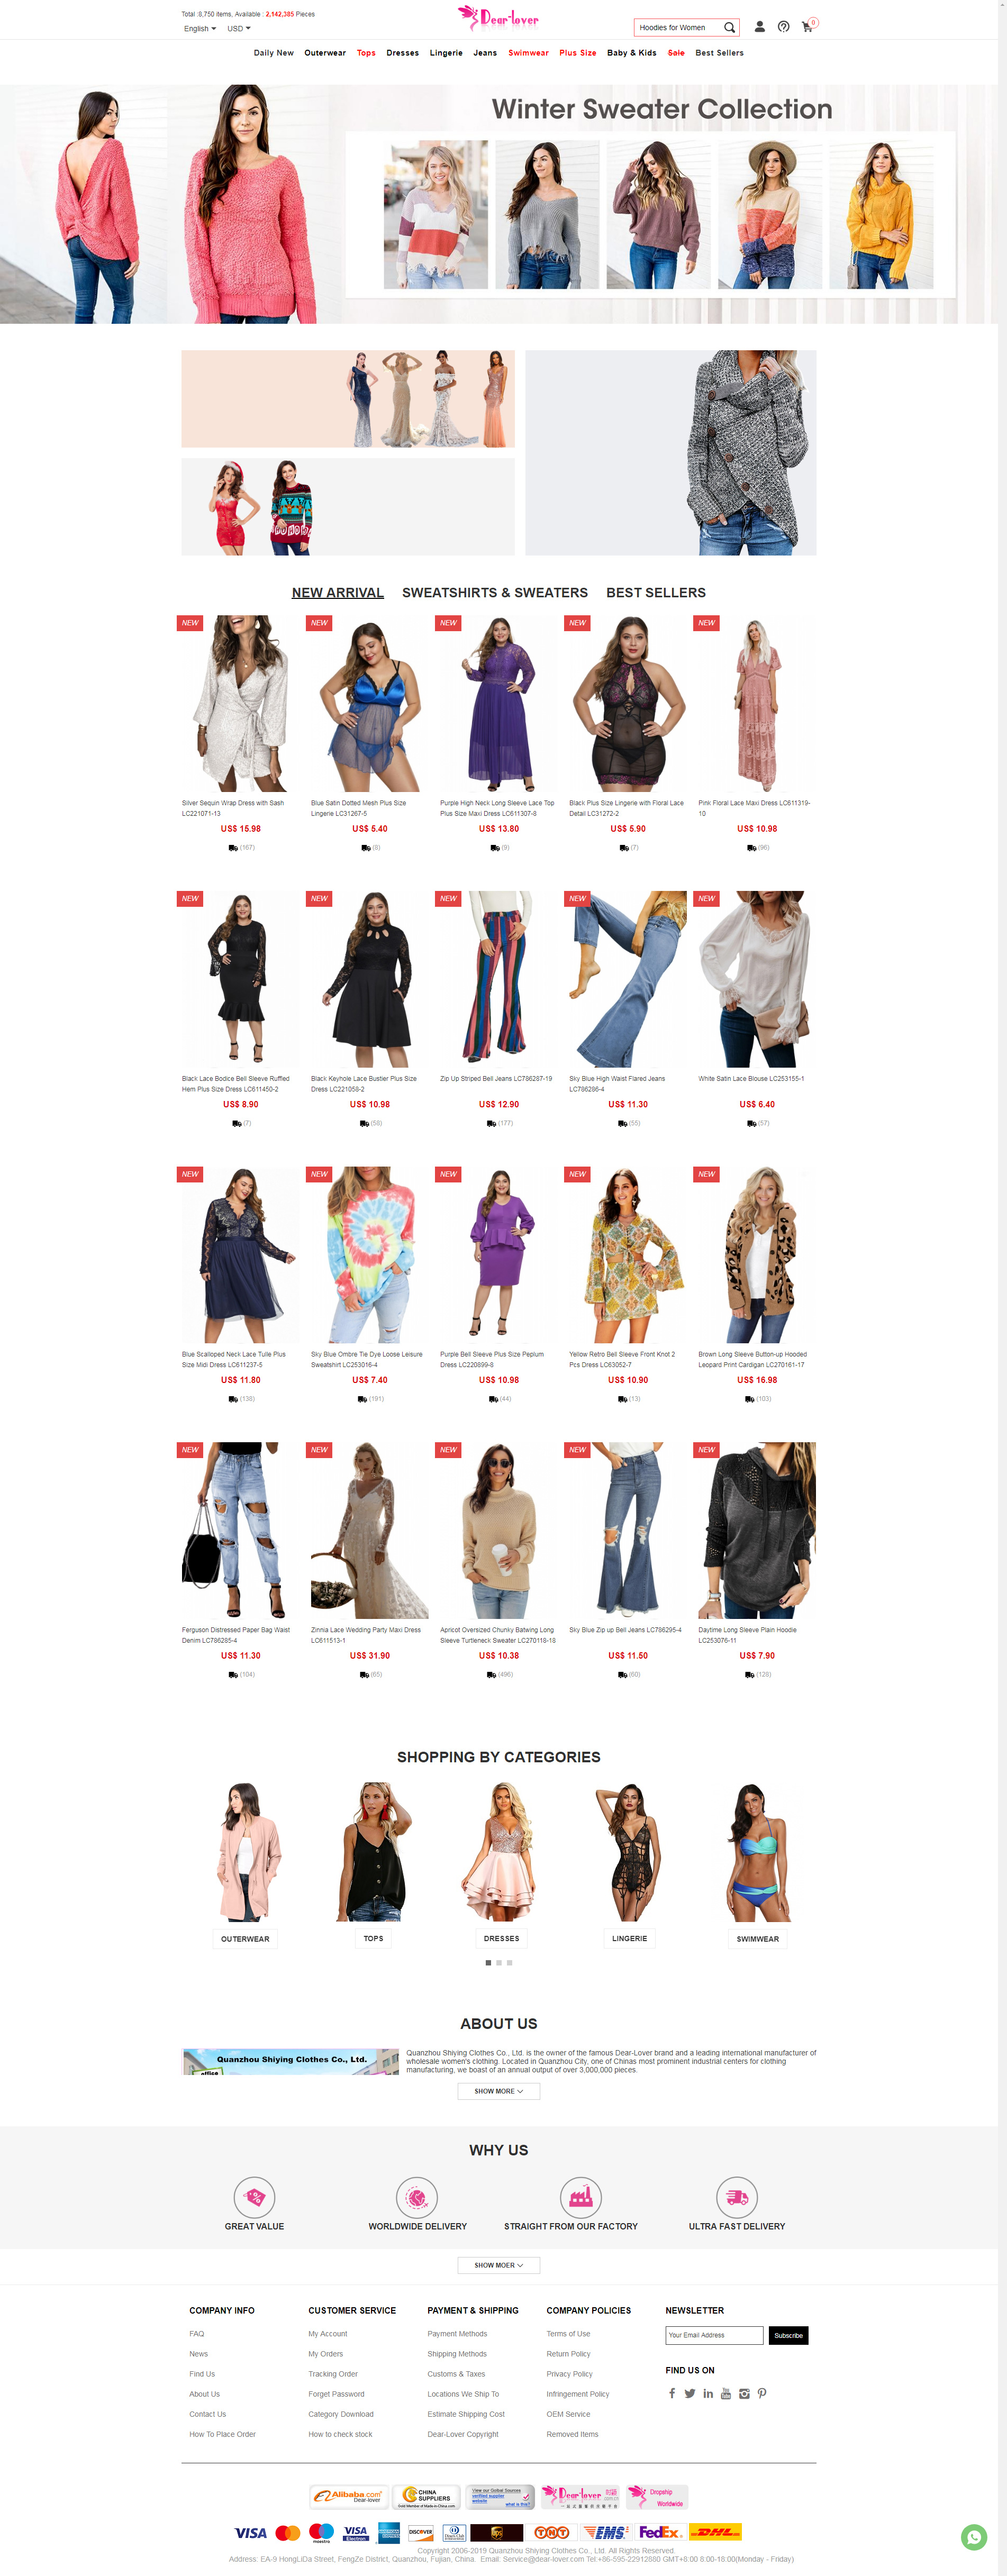 Wholesale-Women's-Clothing-Manufacturer,-Boutique-Supplier.jpg